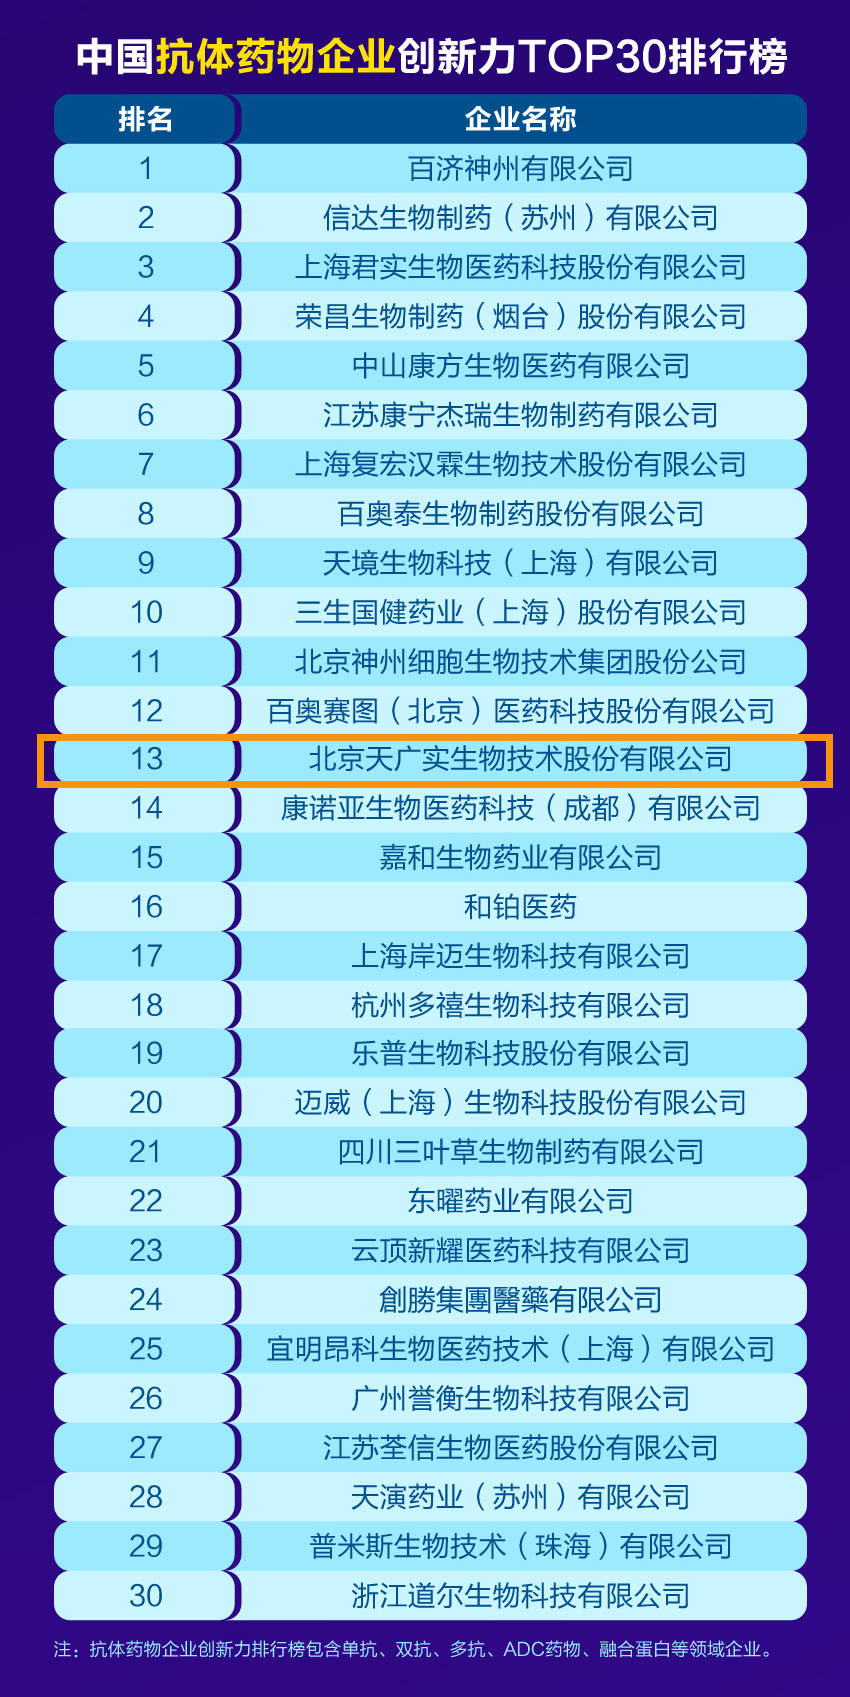 04创新力百强系列榜单抗体TOP30.jpg